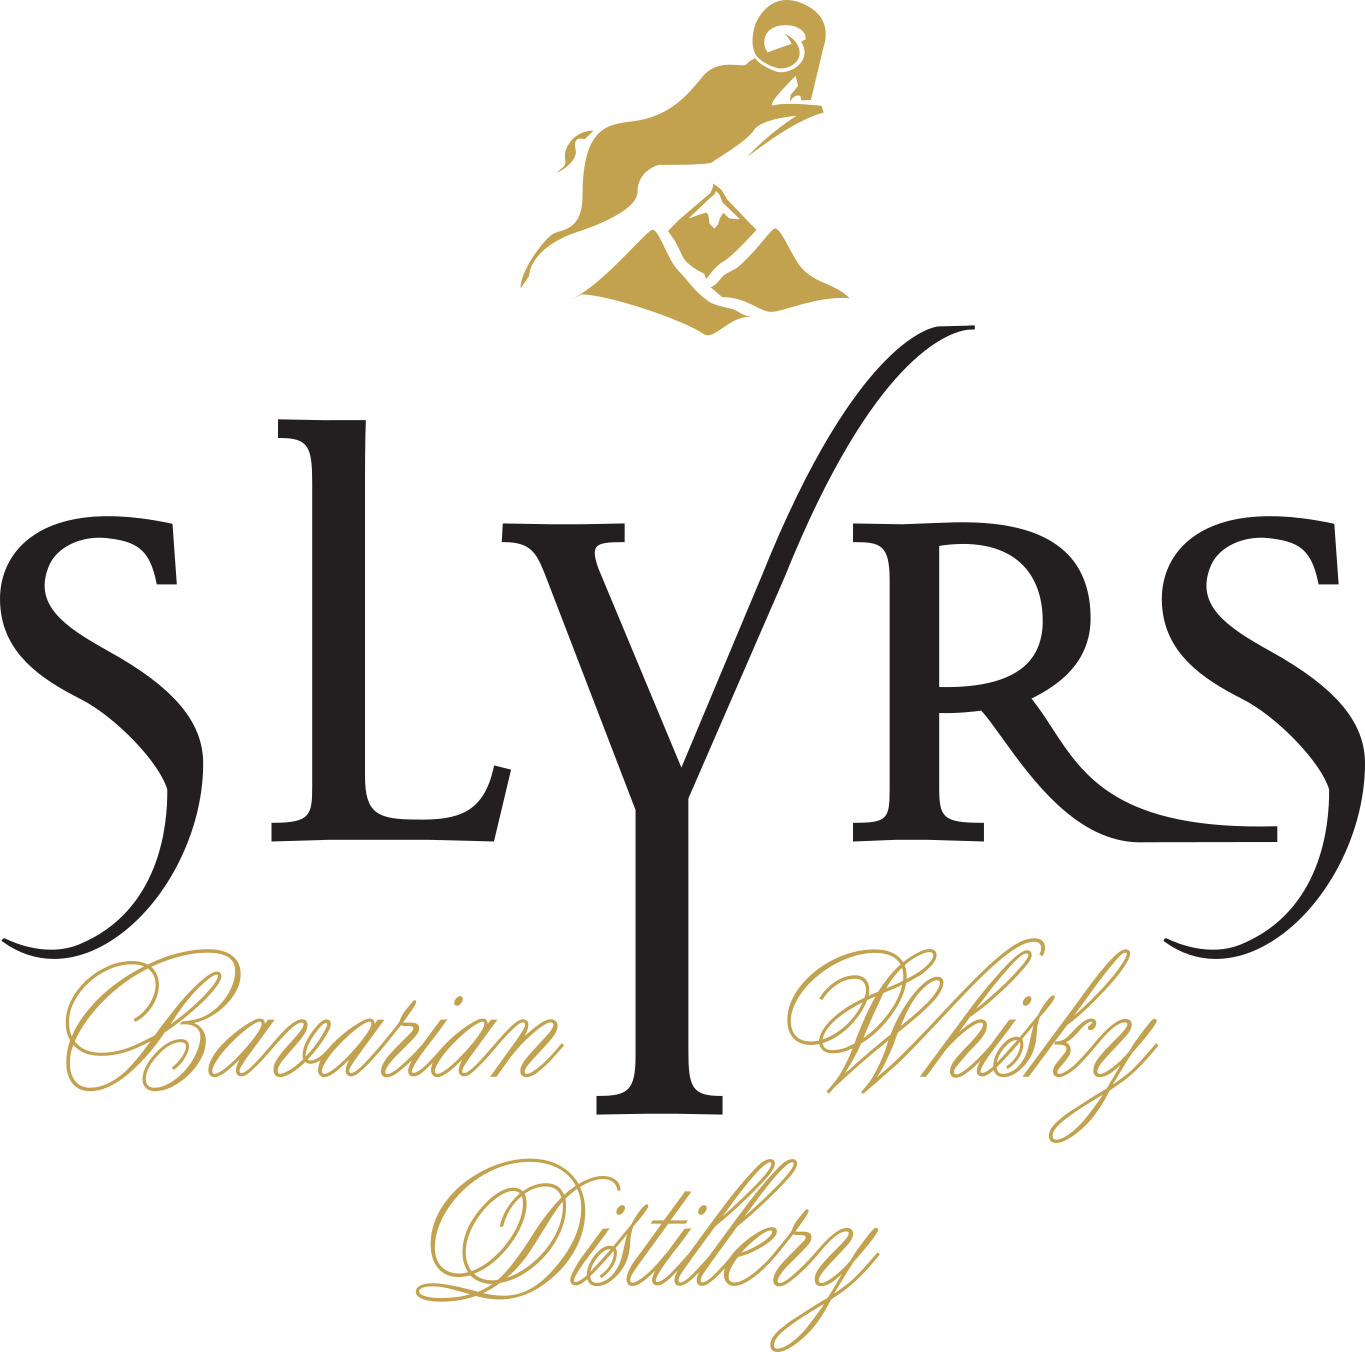 Slyrs_2020_bavarian_whisky_distillery_4c_black_letter_gold